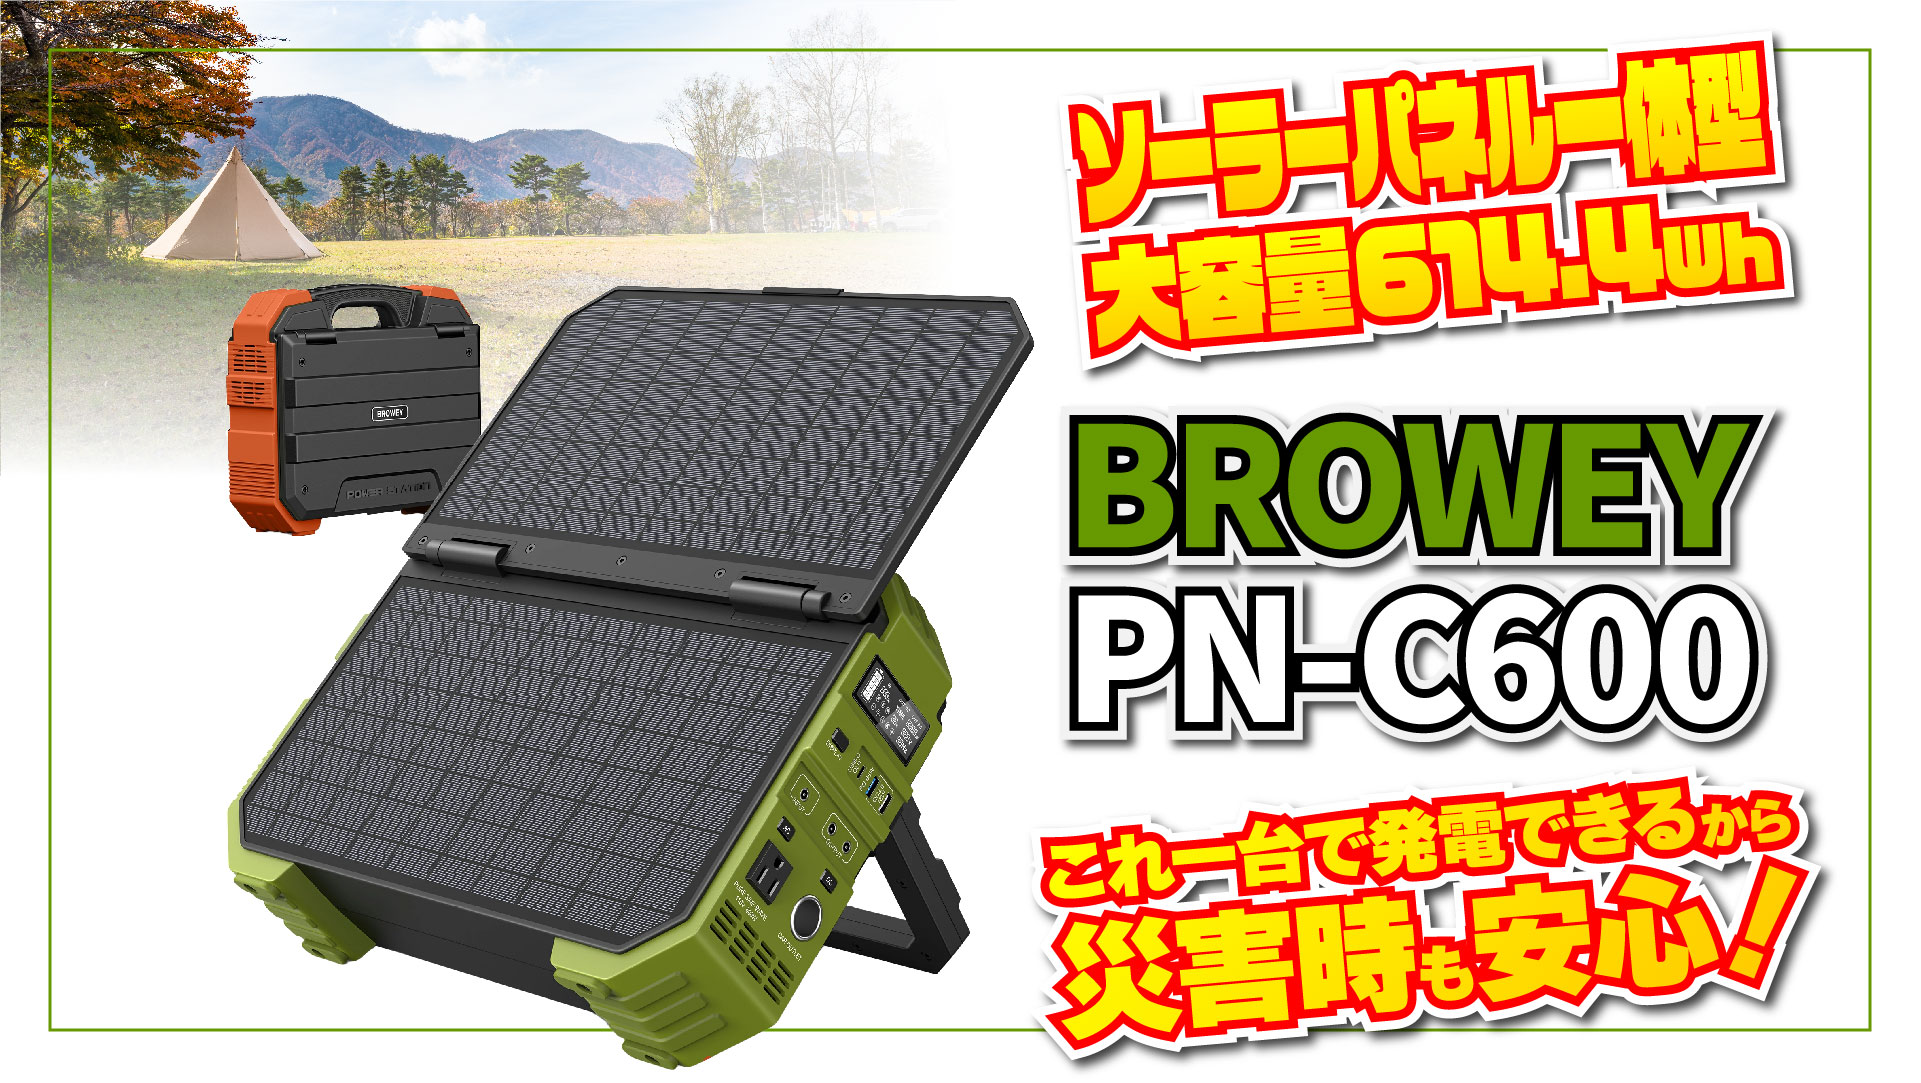 災害時も安心！30W ソーラー充電できる BROWEY PN-C600 ポータブル電源の実機レビュー